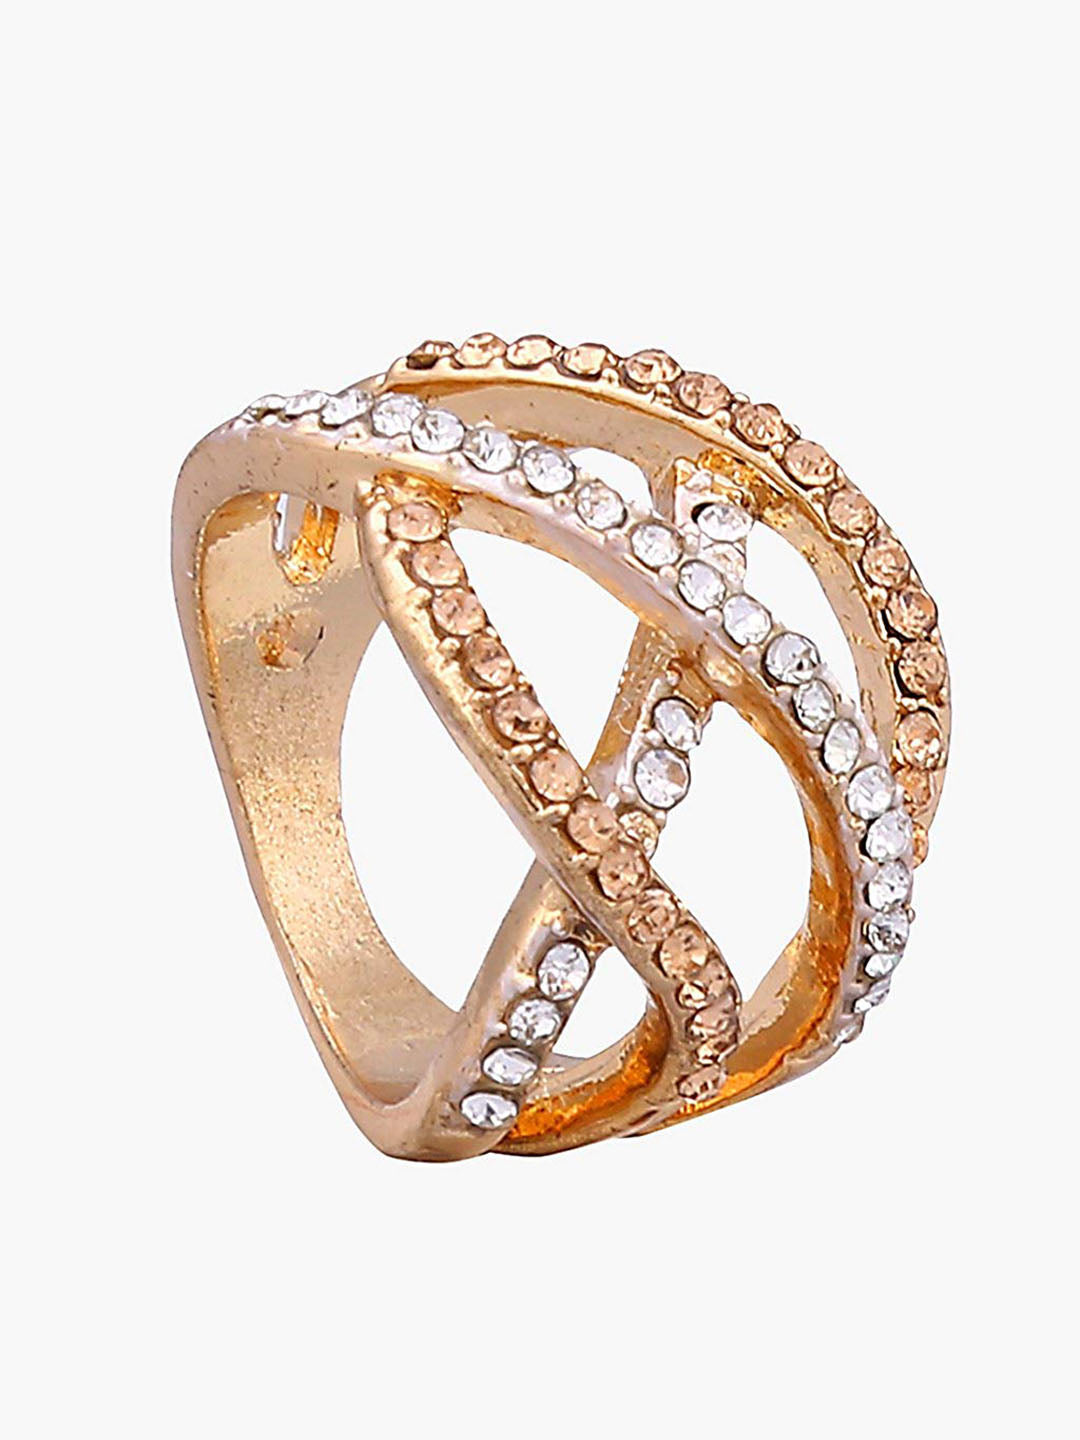 Gold Stone Single Finger Ring For Girls/Women